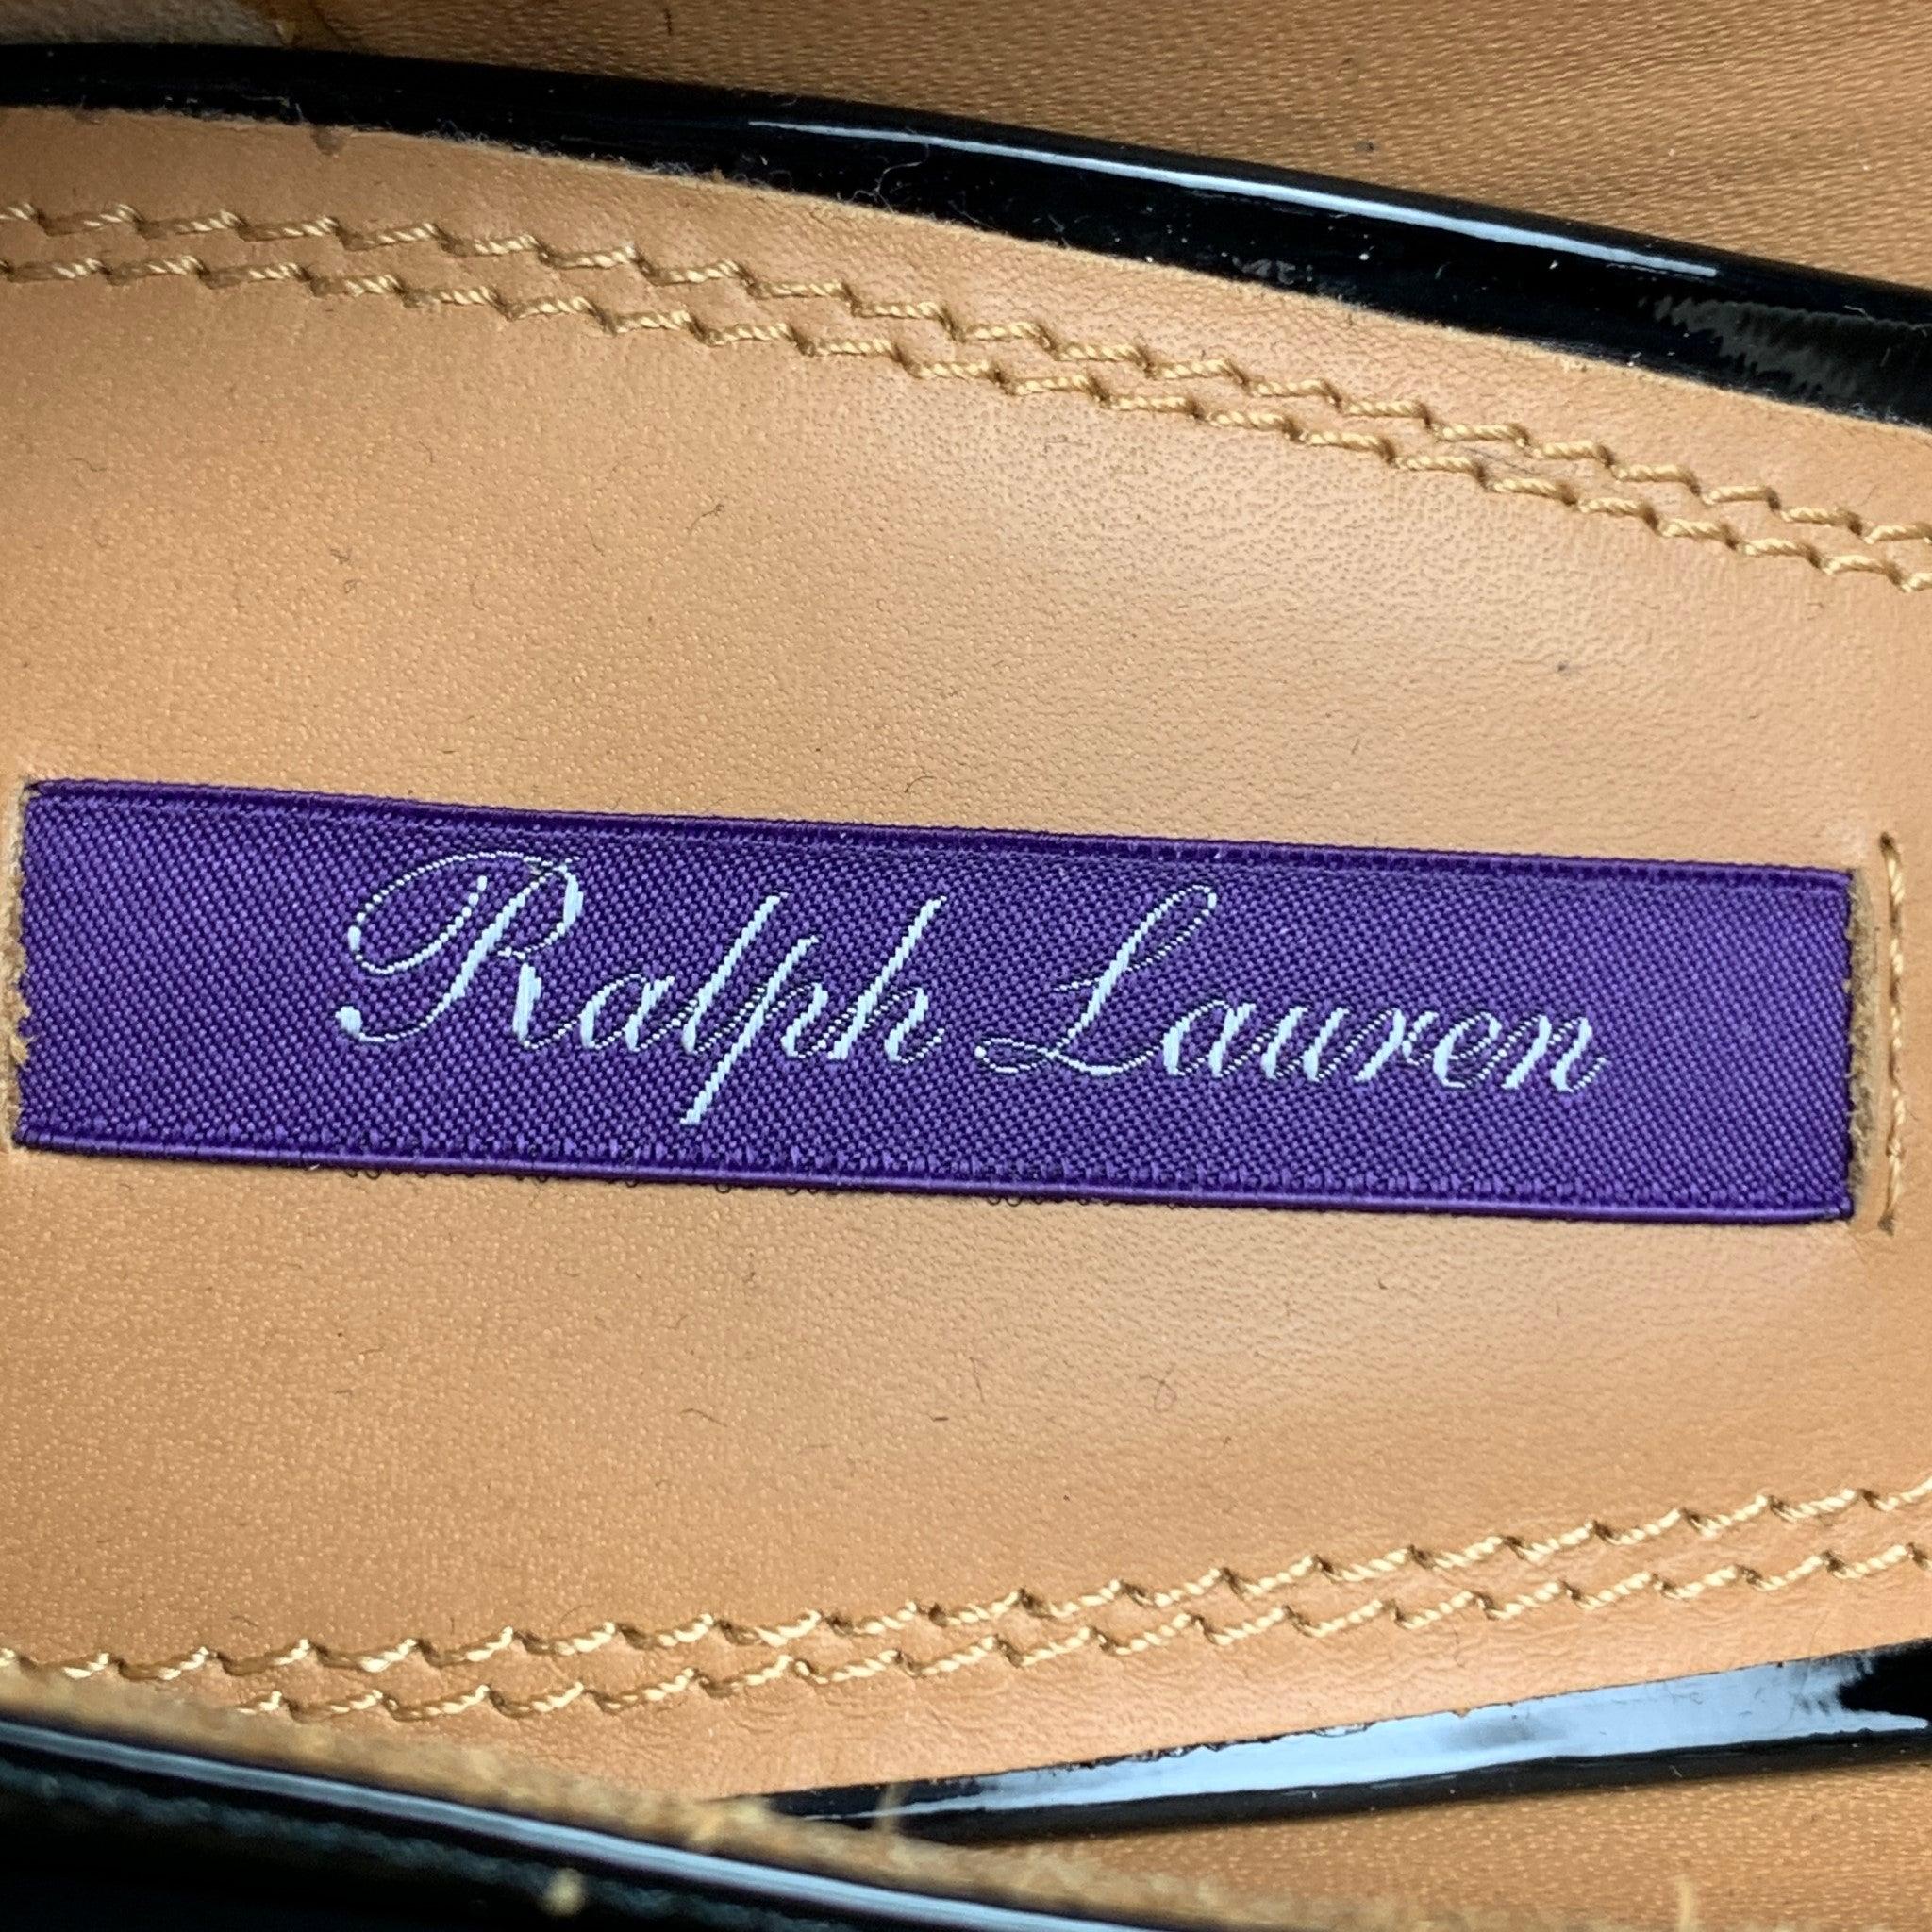 RALPH LAUREN Size 9.5 Black Leather Patent Leather Stiletto Celia Pumps For Sale 3